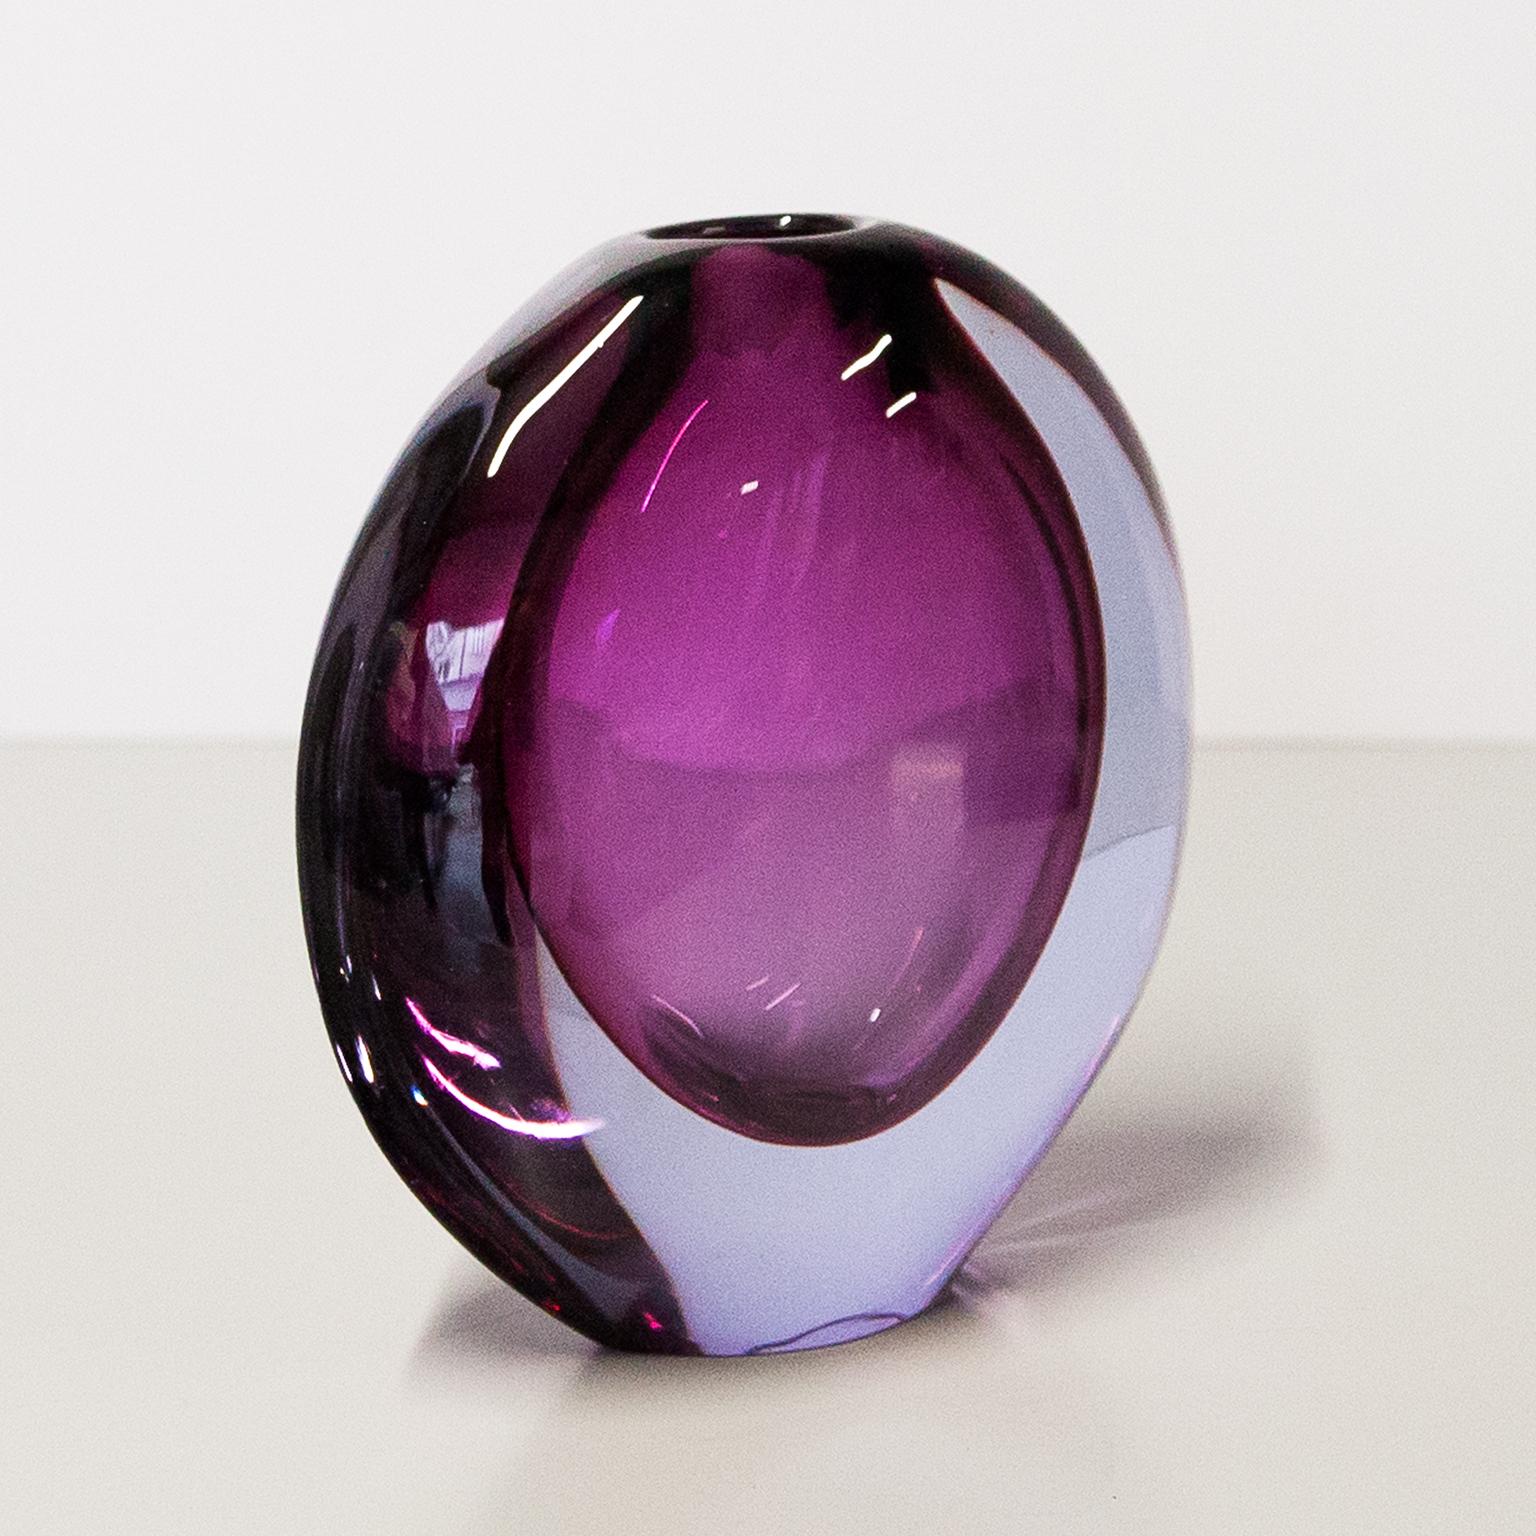 Italian Huge Flavio Poli Seguso Purple Vase For Sale